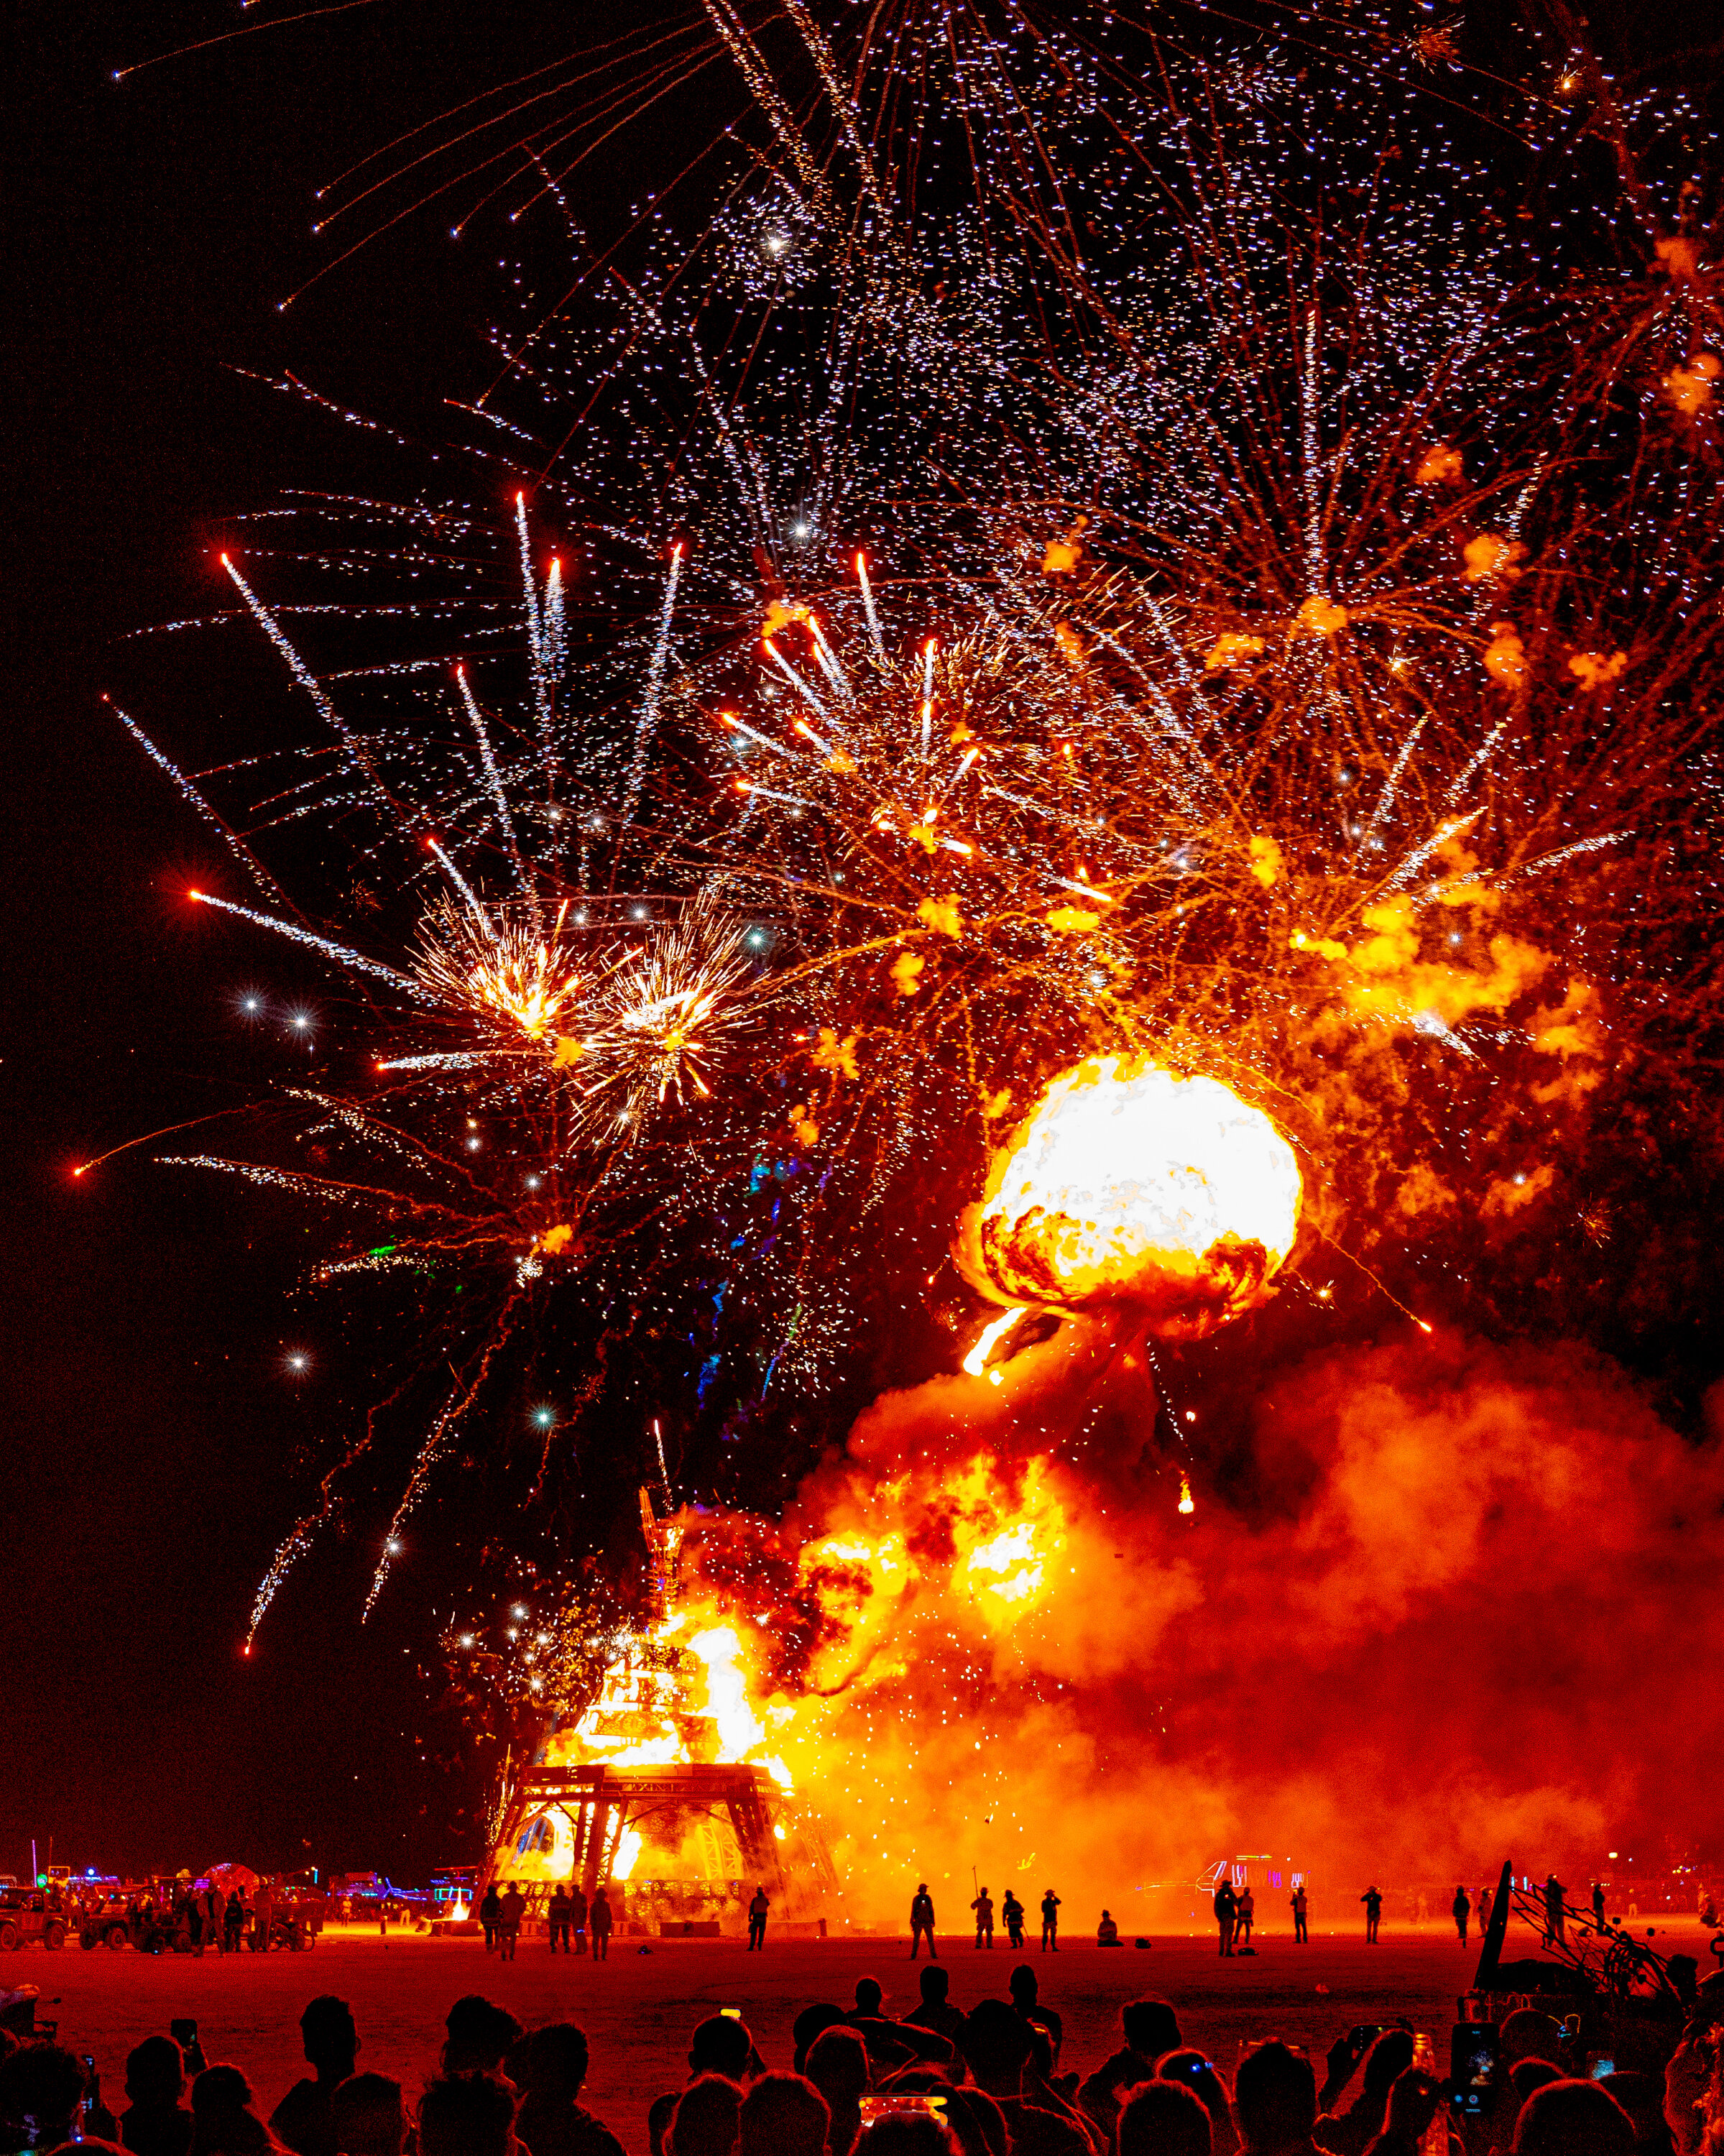 Burning Man 2019 - The Man Burns